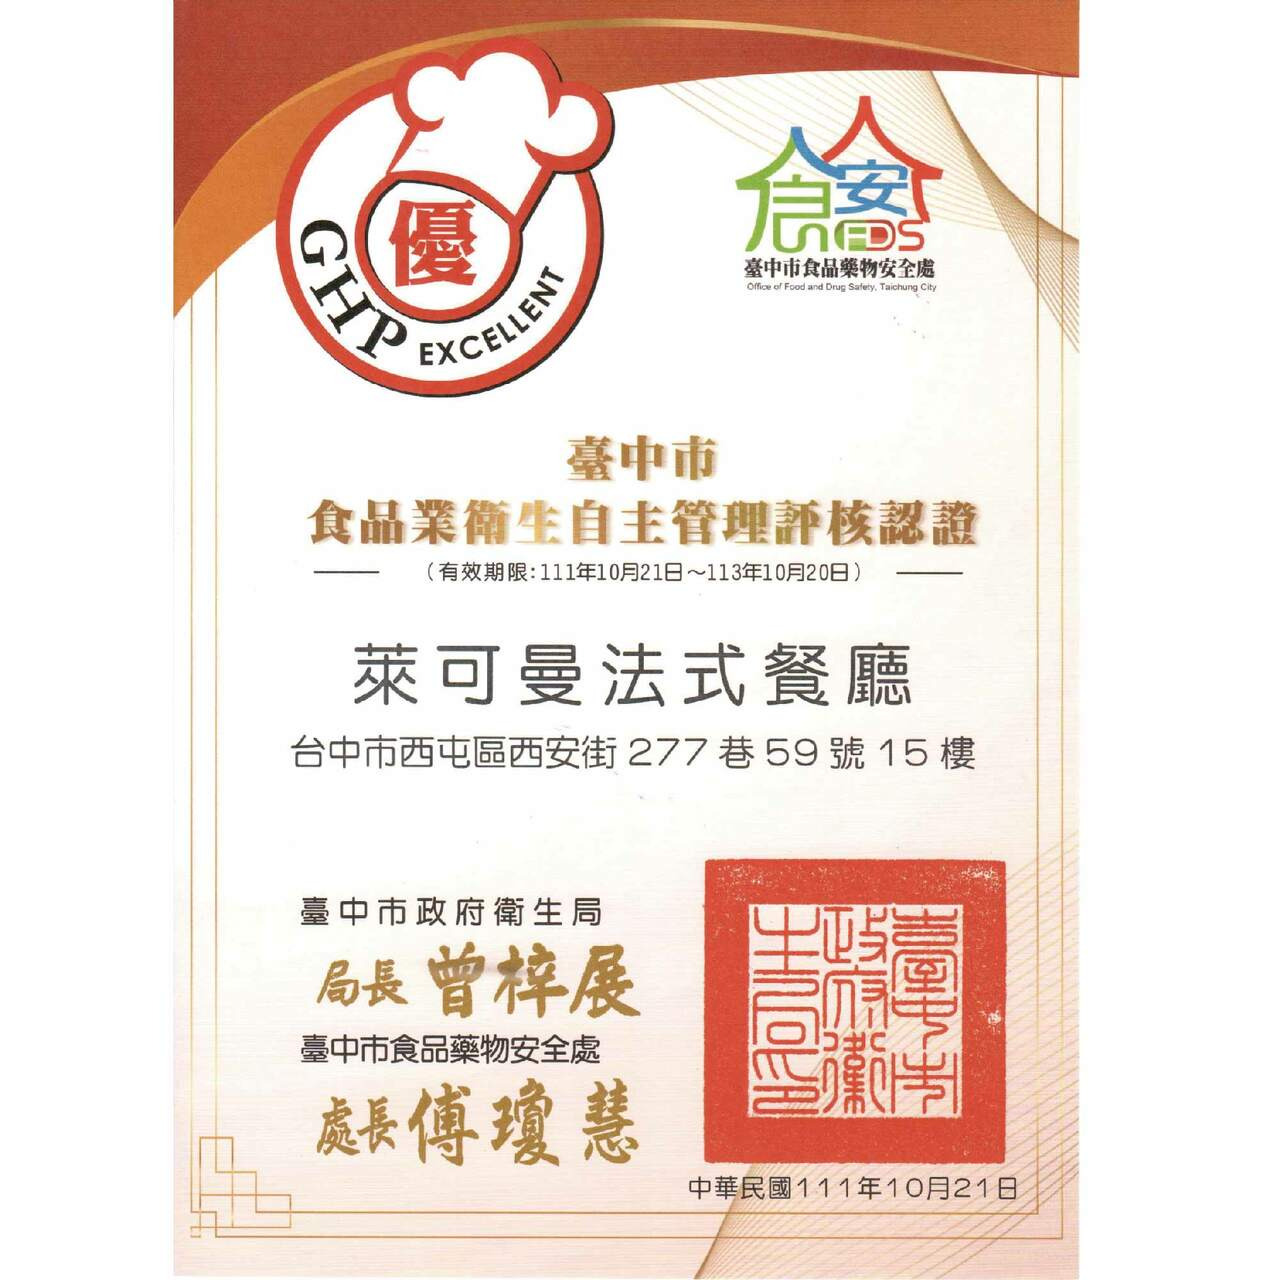 臺中市食品業衛生自主管理評核認證